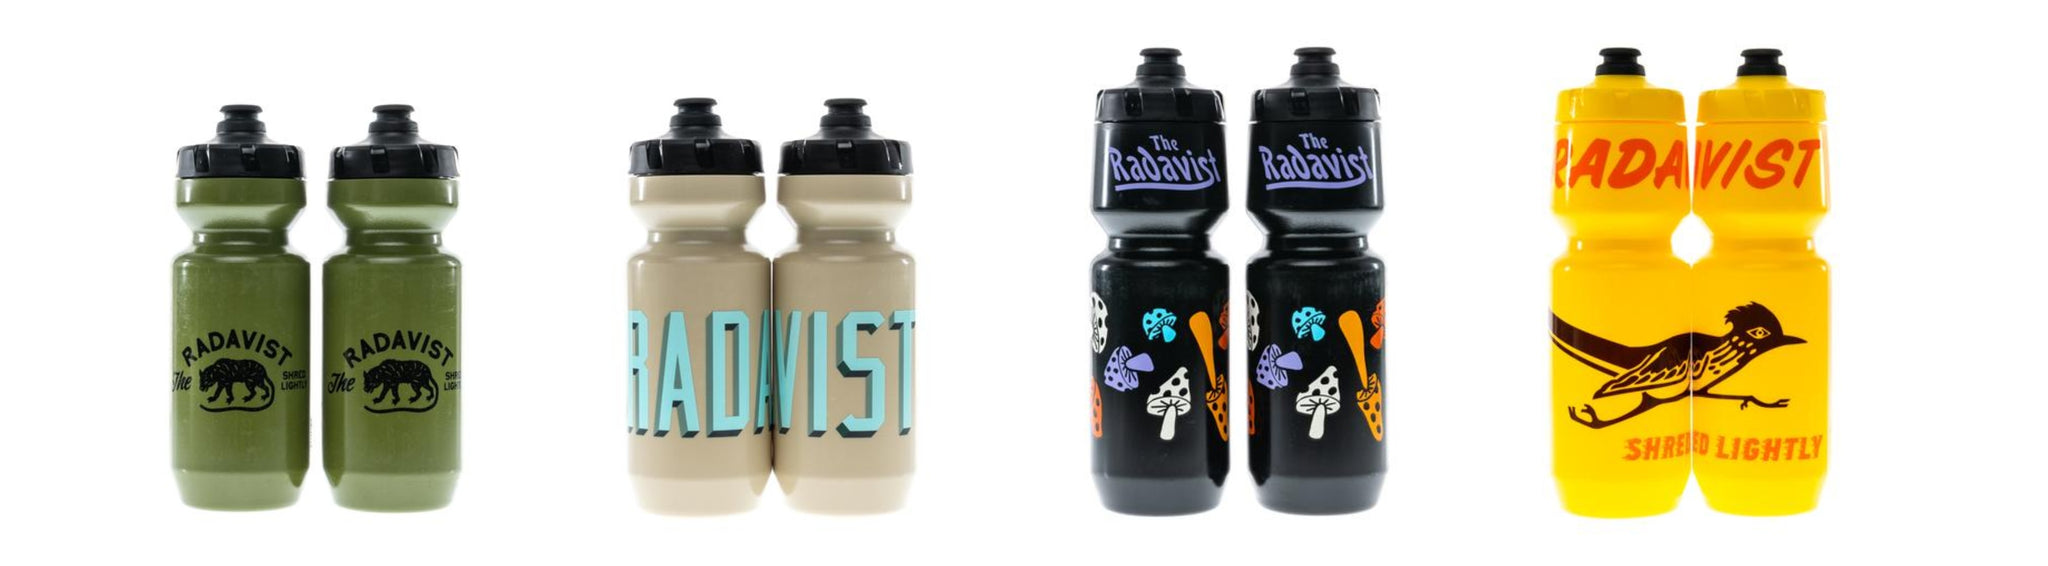 Radavist water bottles